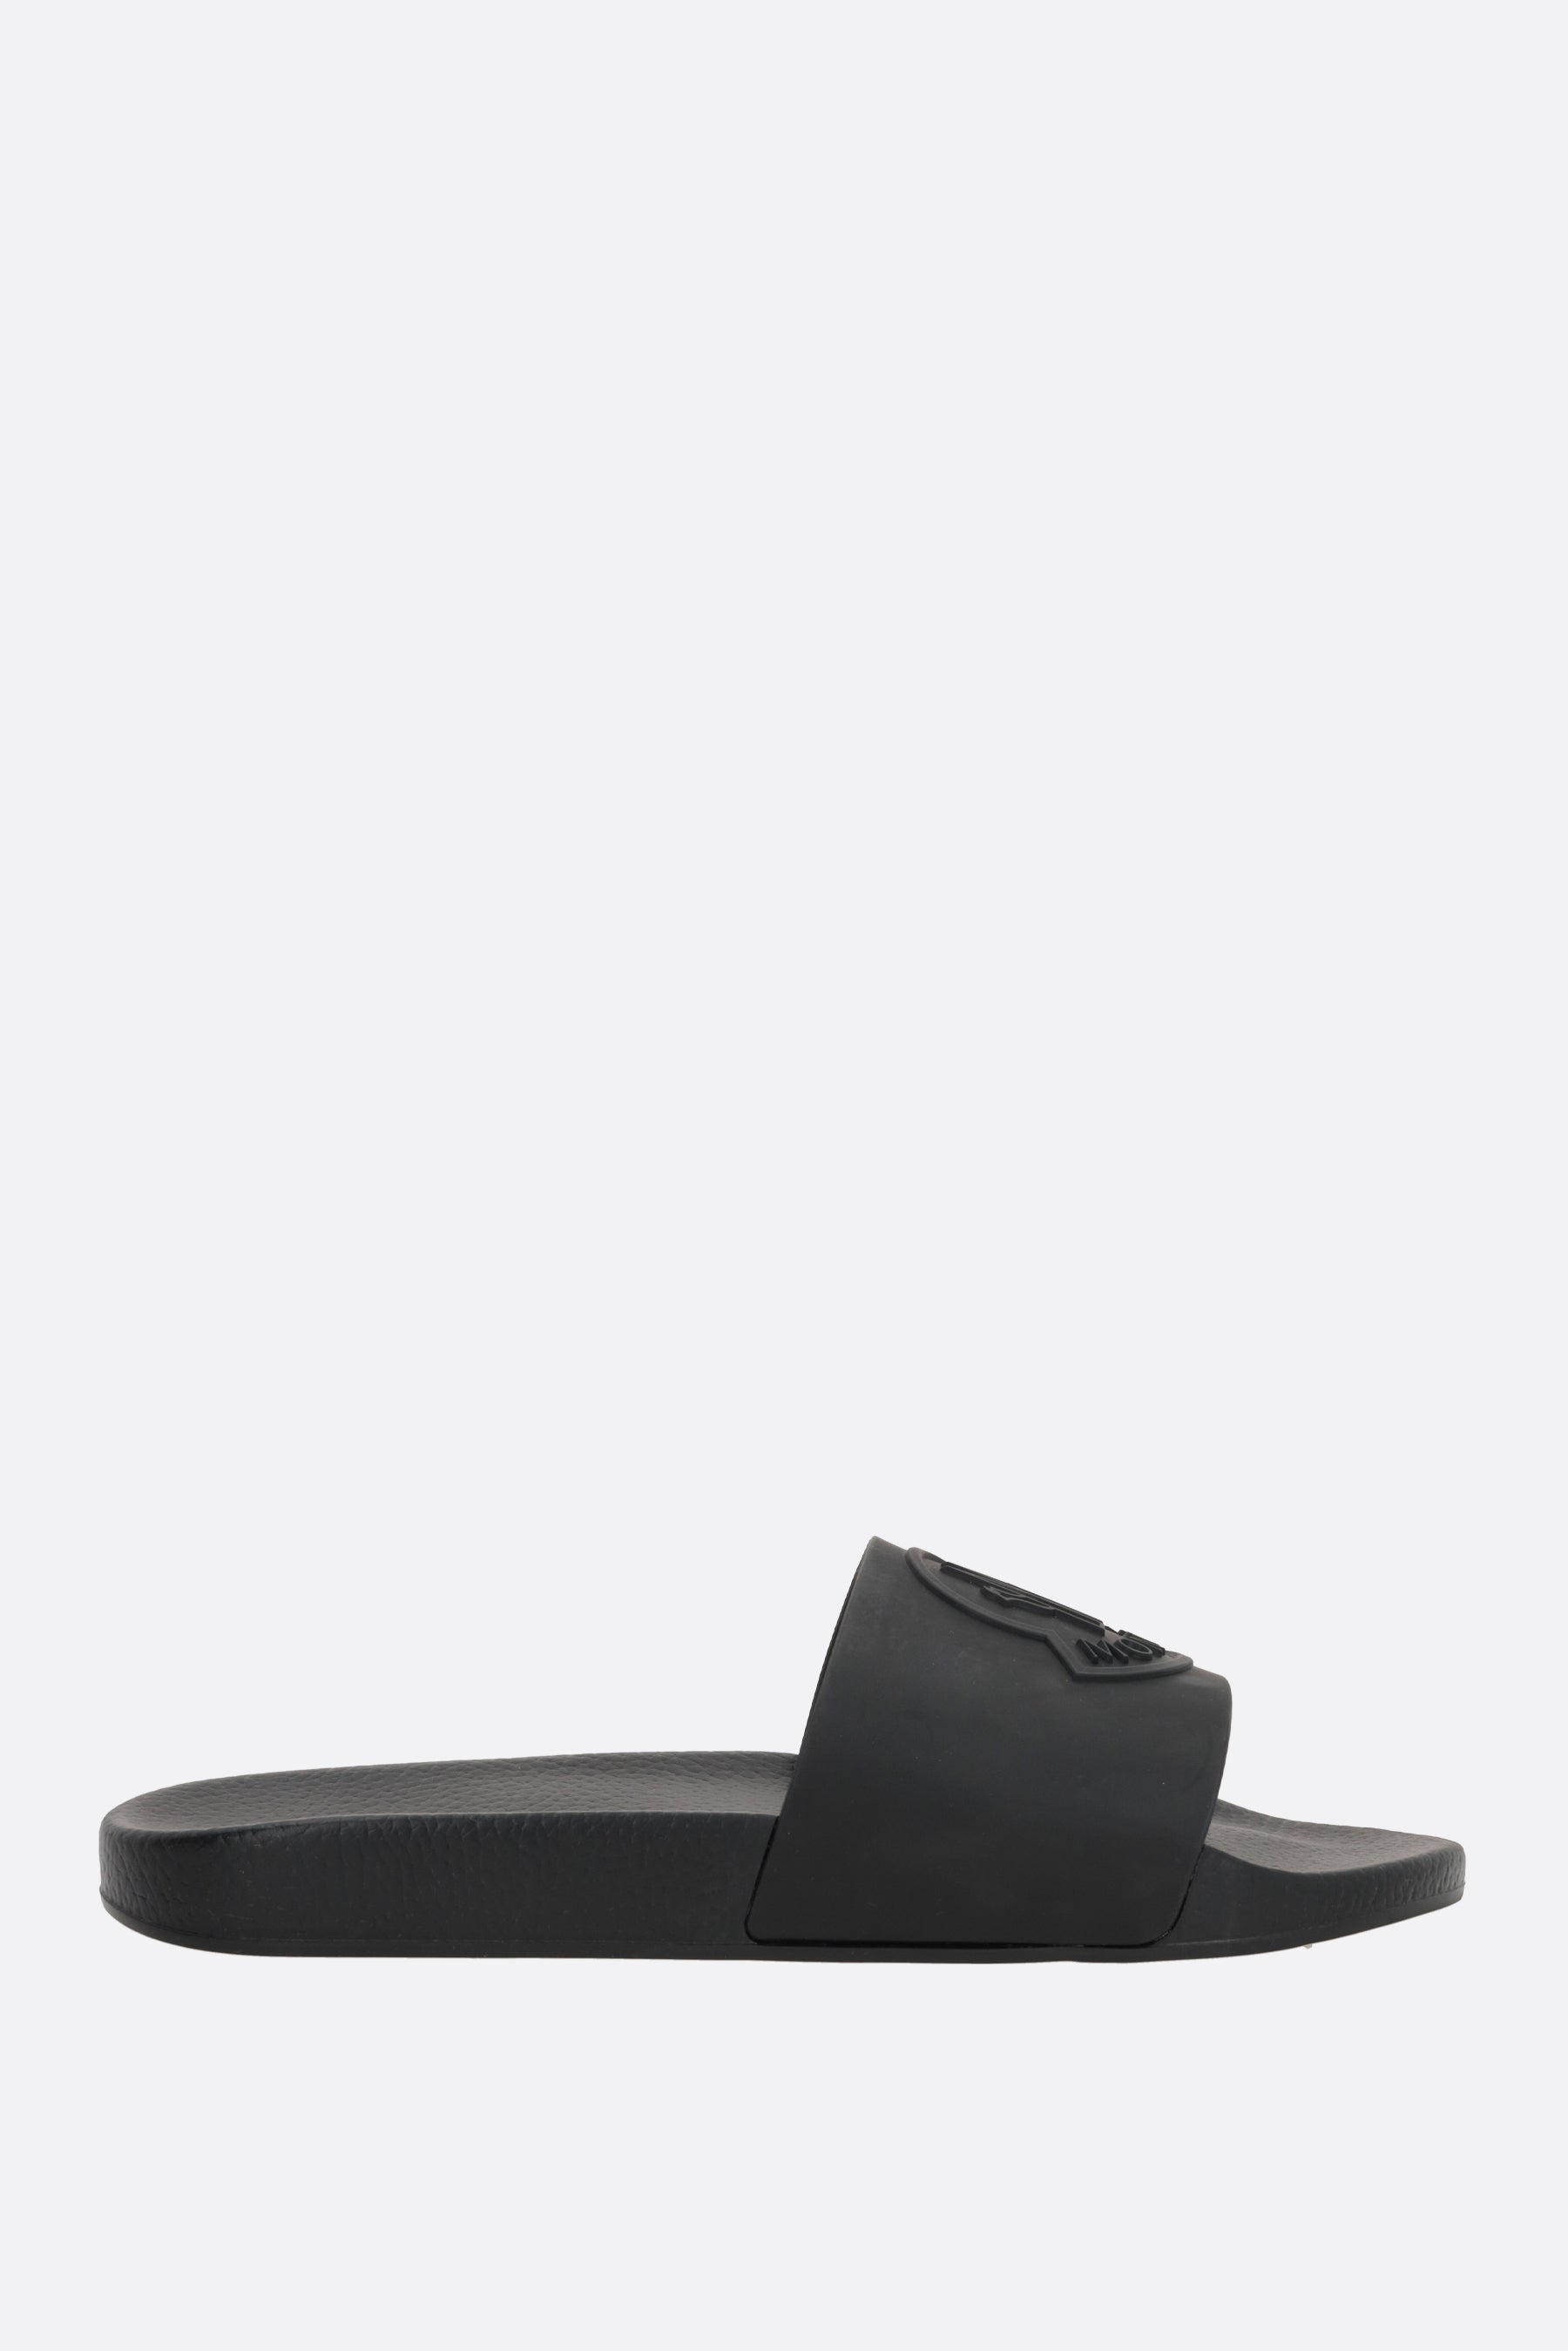 Basile rubber slide sandals